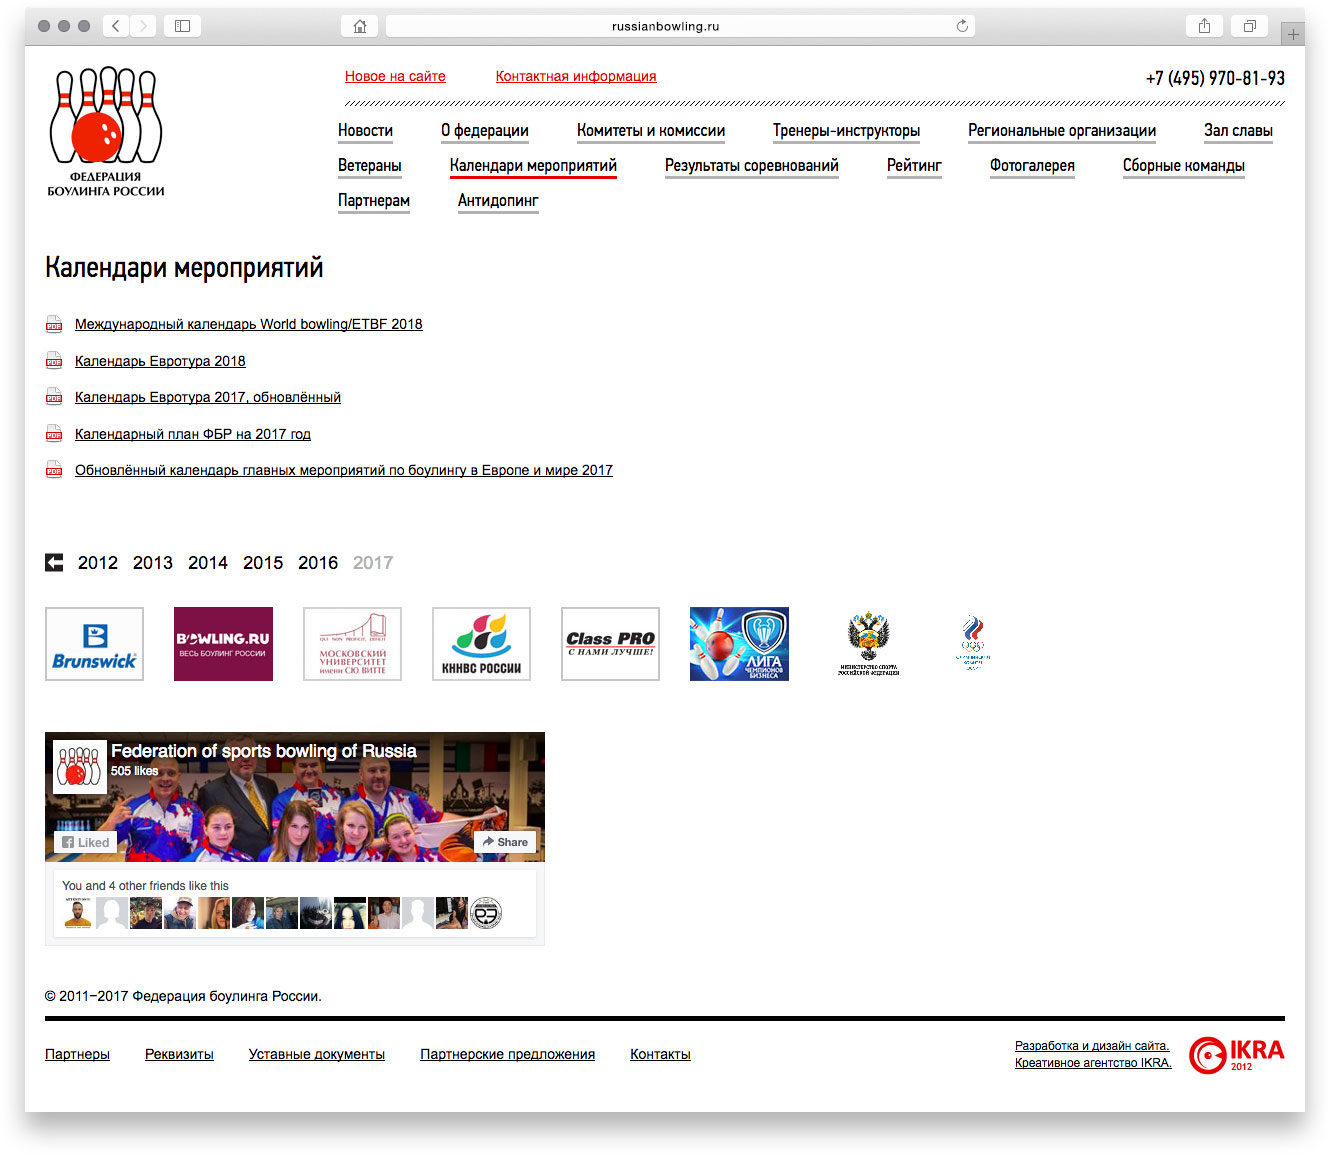 Разработка дизайна официального сайта Федерации боулинга России